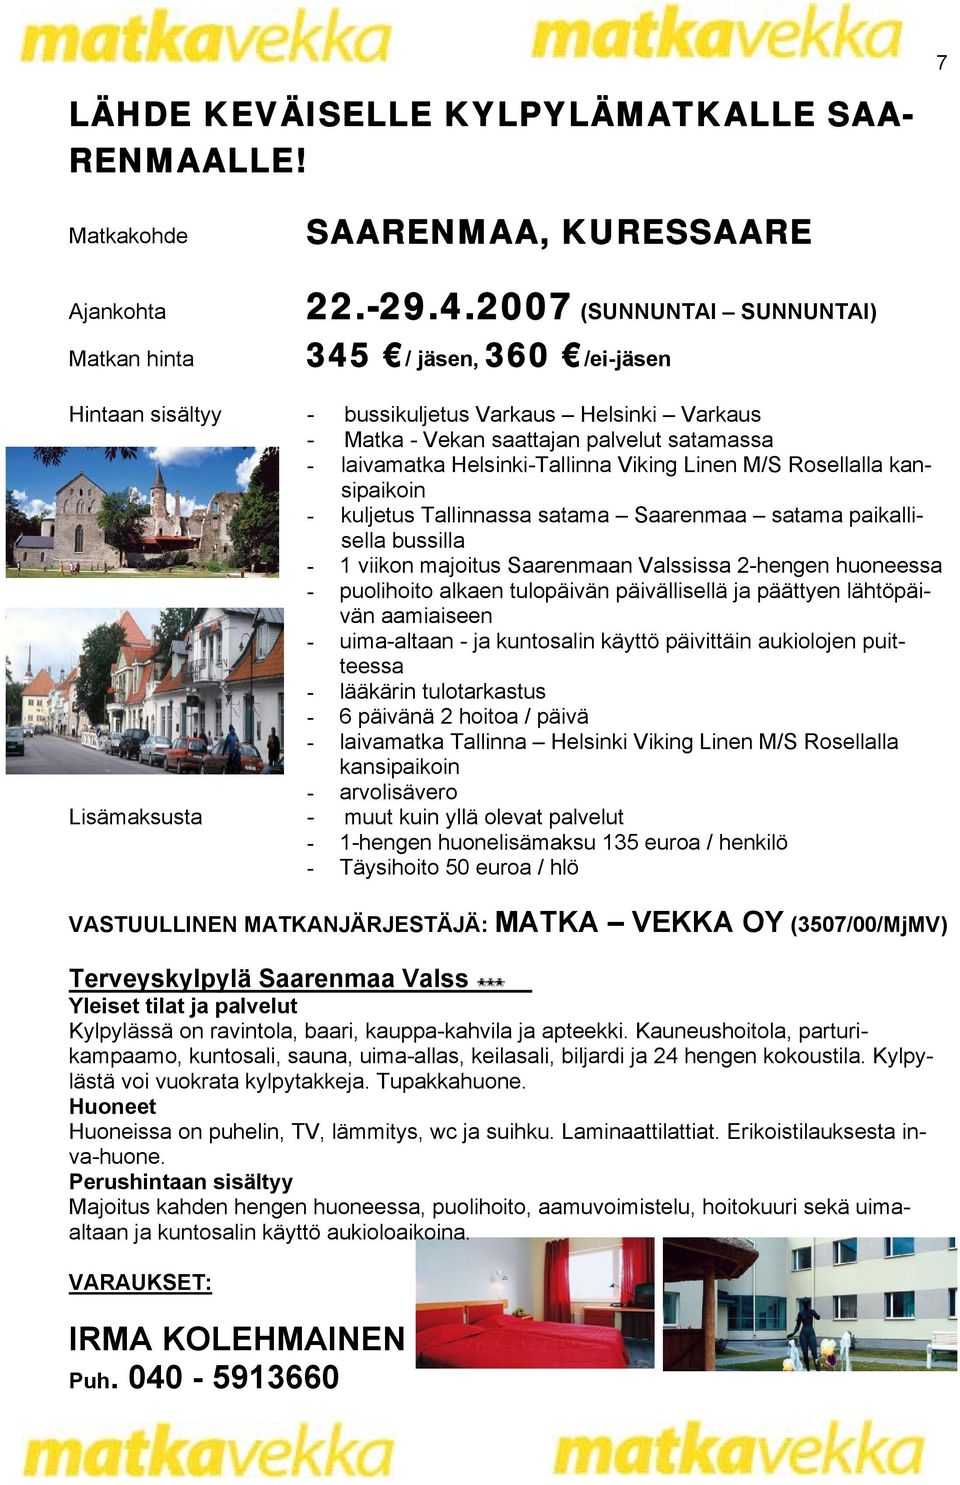 Linen M/S Rosellalla kansipaikoin - kuljetus Tallinnassa satama Saarenmaa satama paikallisella bussilla - 1 viikon majoitus Saarenmaan Valssissa 2-hengen huoneessa - puolihoito alkaen tulopäivän